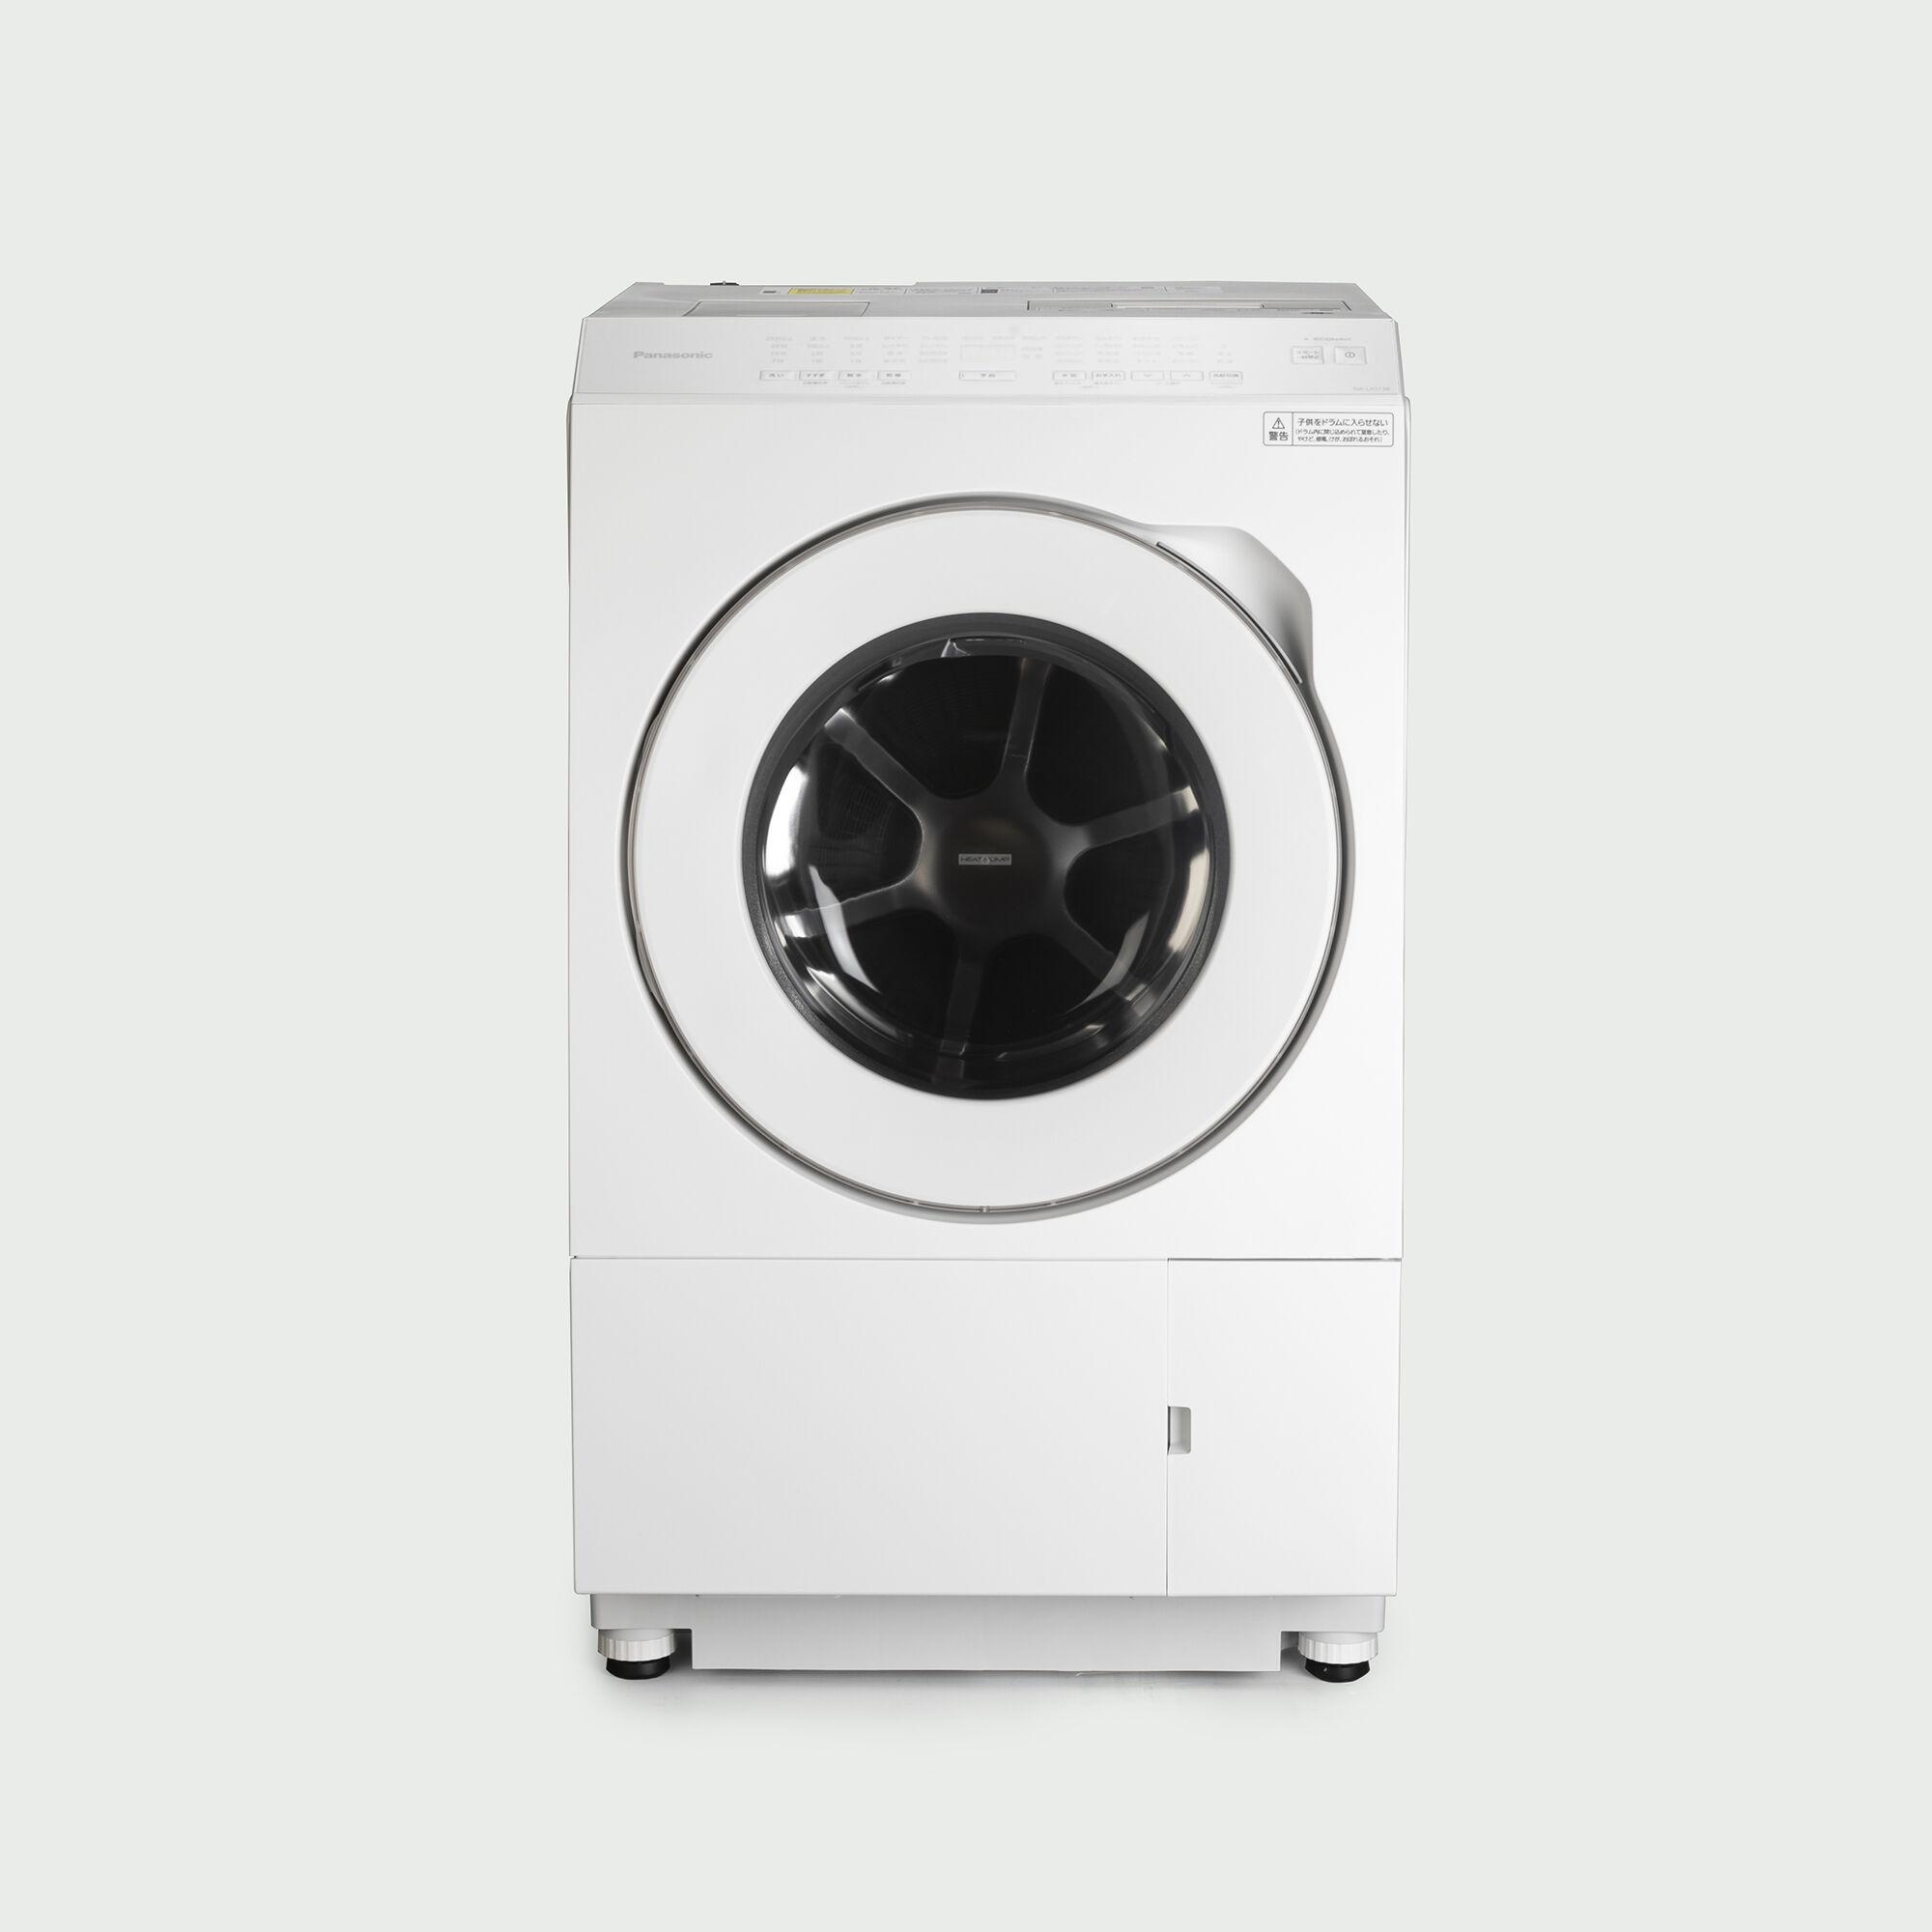 Panasonic ななめドラム式洗濯乾燥機【洗濯11kg/乾燥6kg】型番指定(NA 